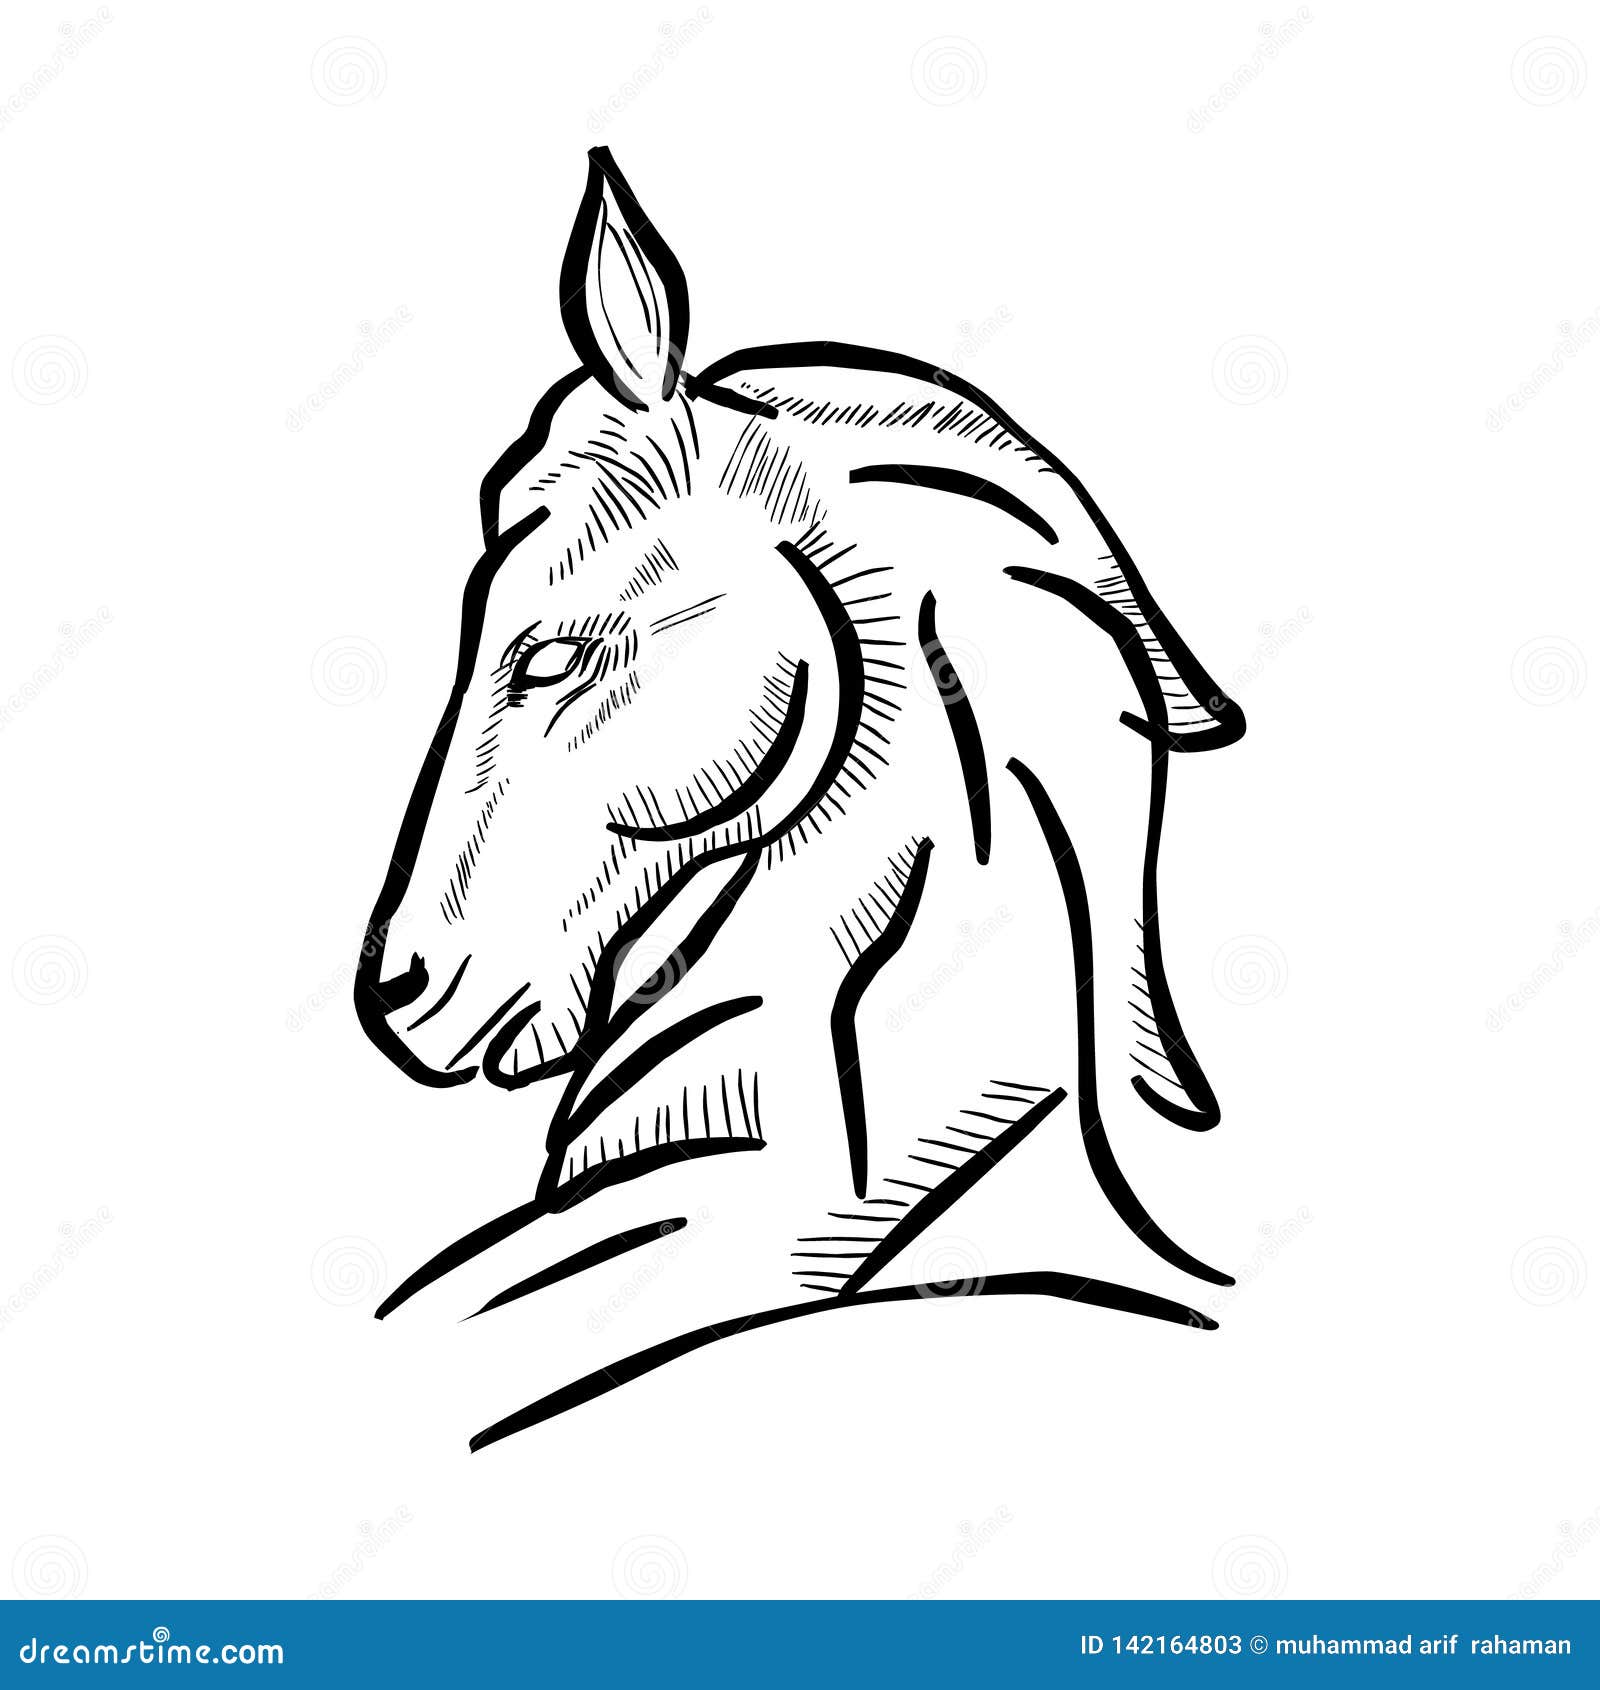 Disegno In Bianco E Nero Semplice Della Testa Di Cavallo